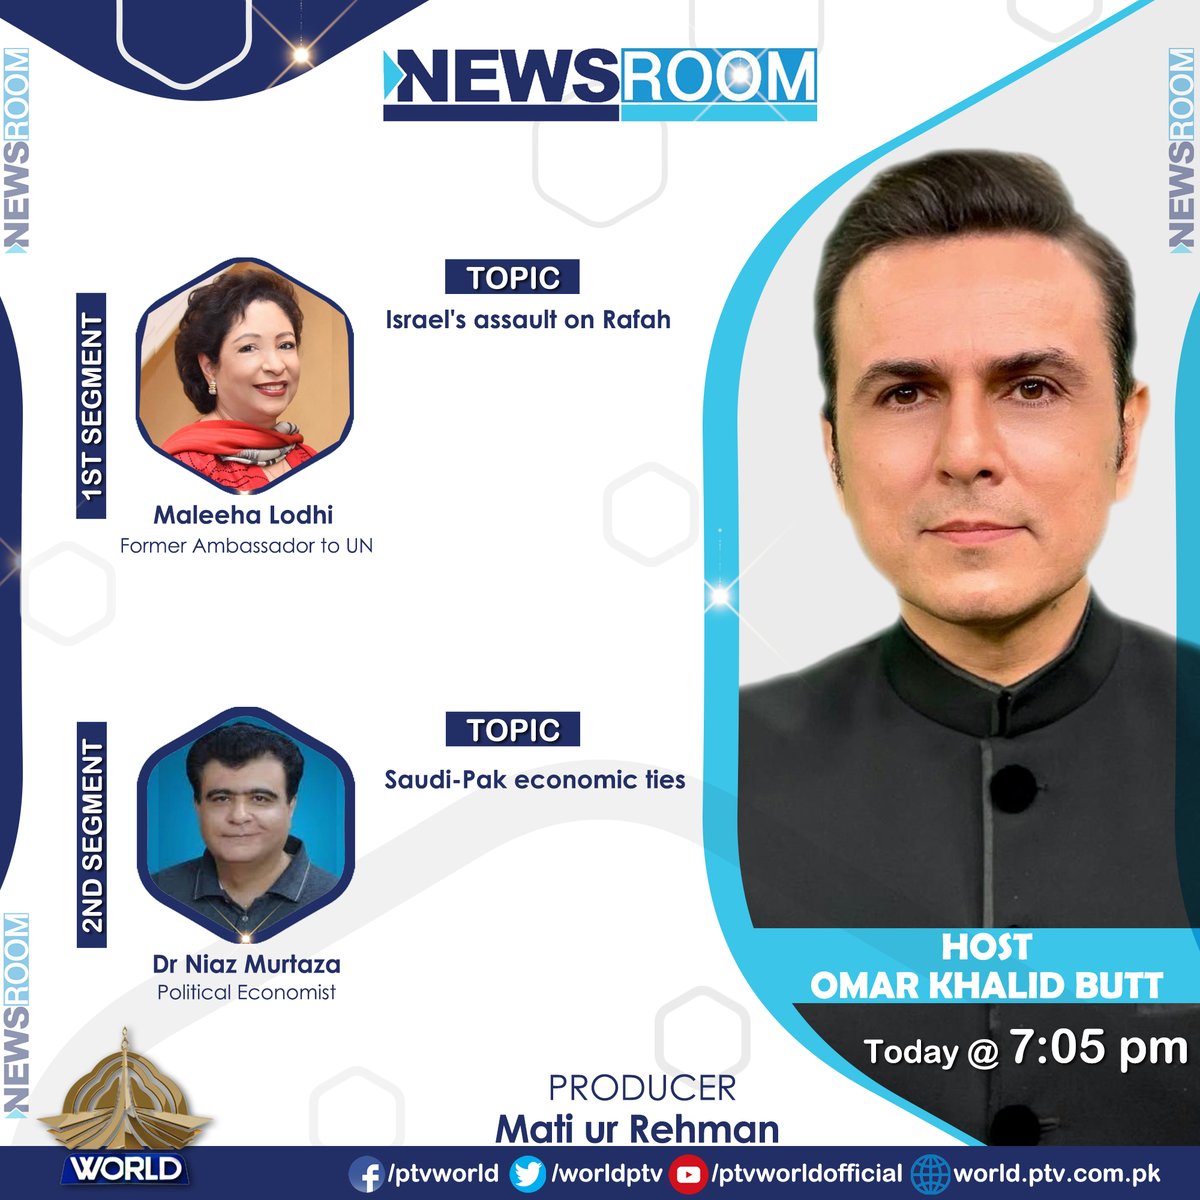 Watch NEWSROOM tonight at 07:05 pm @OmarButtPk @MatiurRehman786 @LodhiMaleeha @NiazMurtaza2